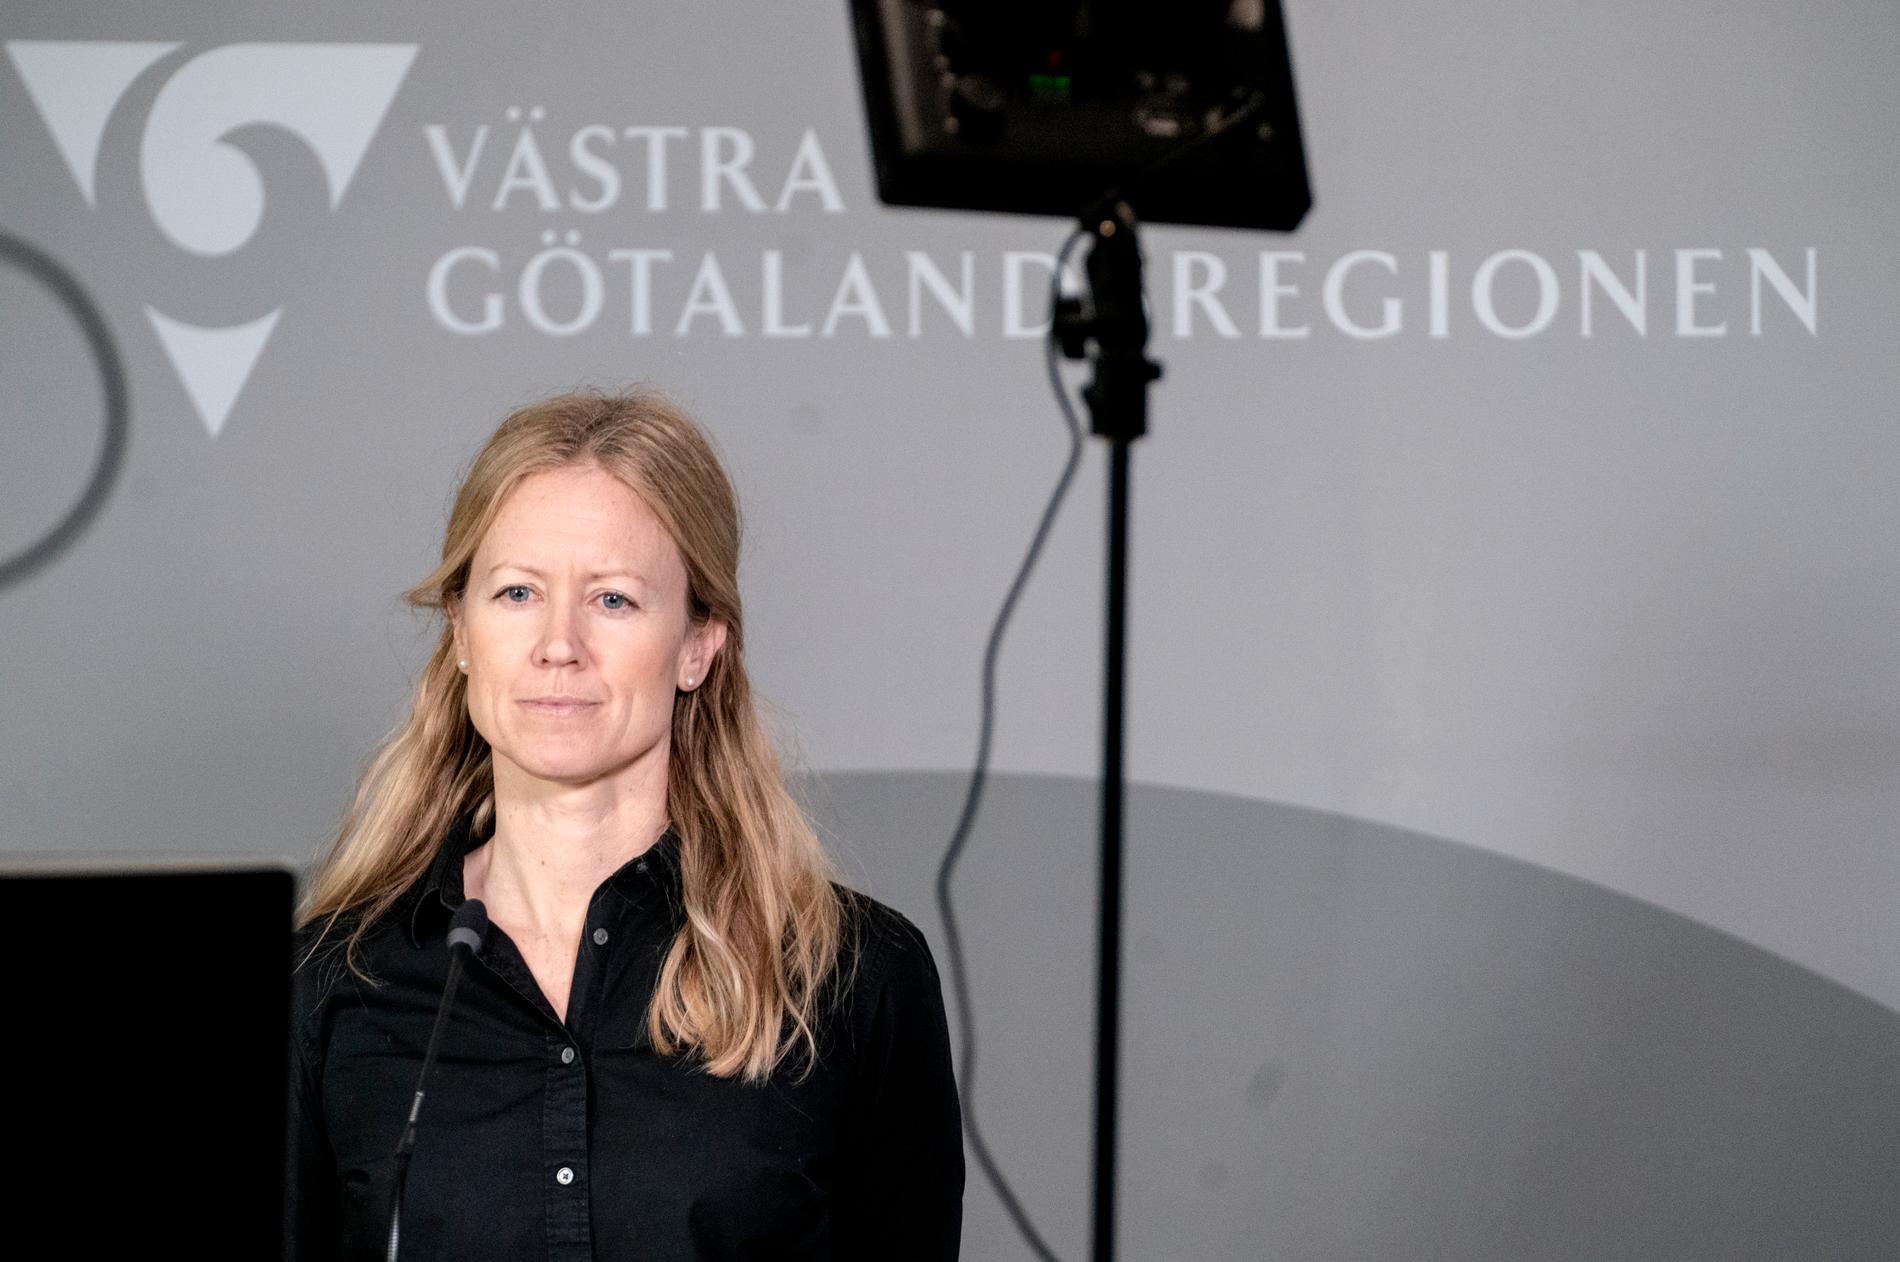 ”Vi har gjort så gott det går”, säger Kristine Rygge, vaccinsamordnare i Region Västra Götaland.